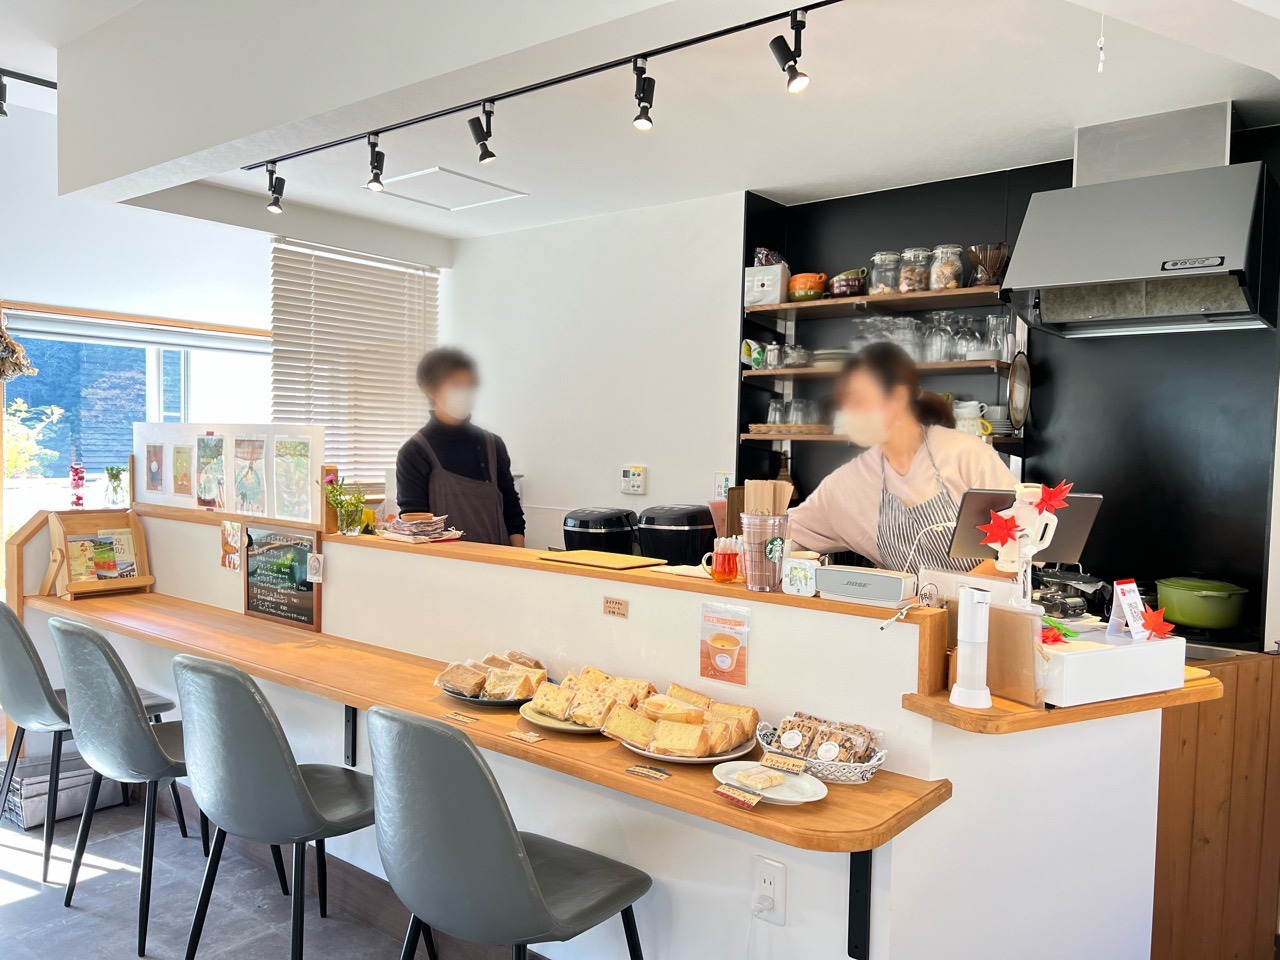 kitchen&cafe「nobana」